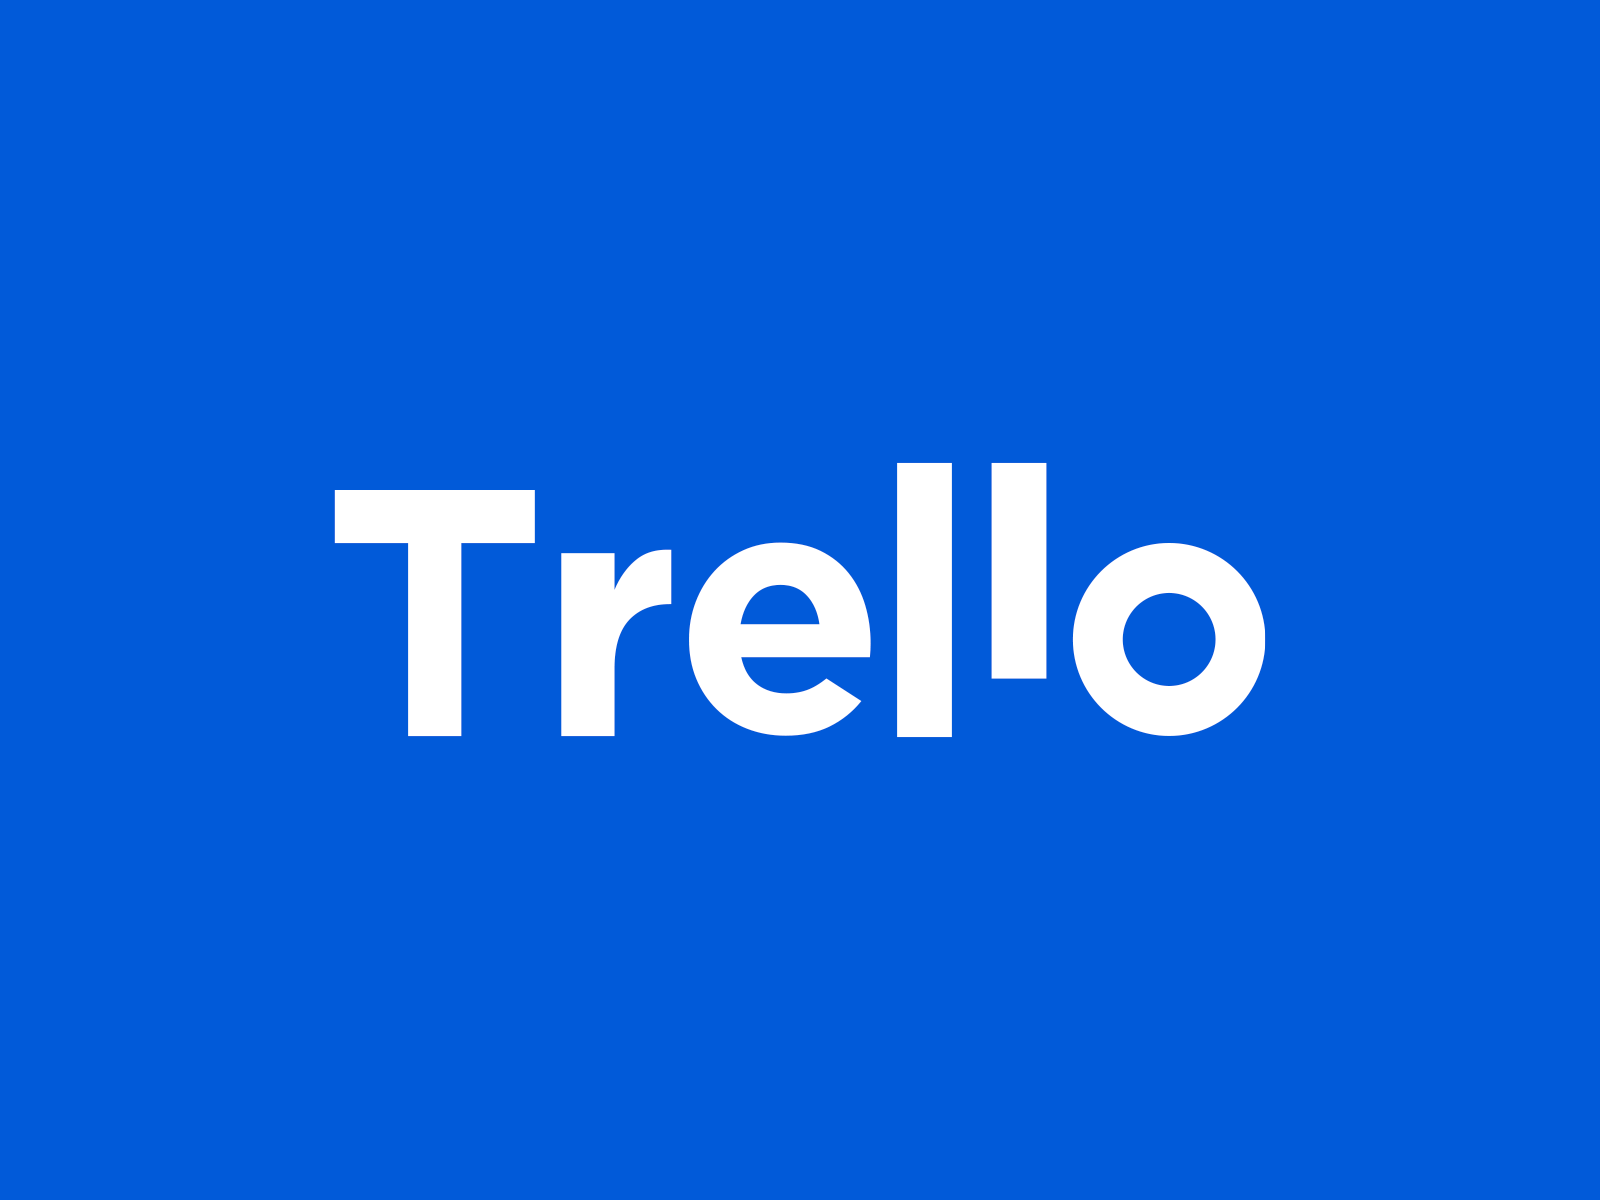 Second piece trello